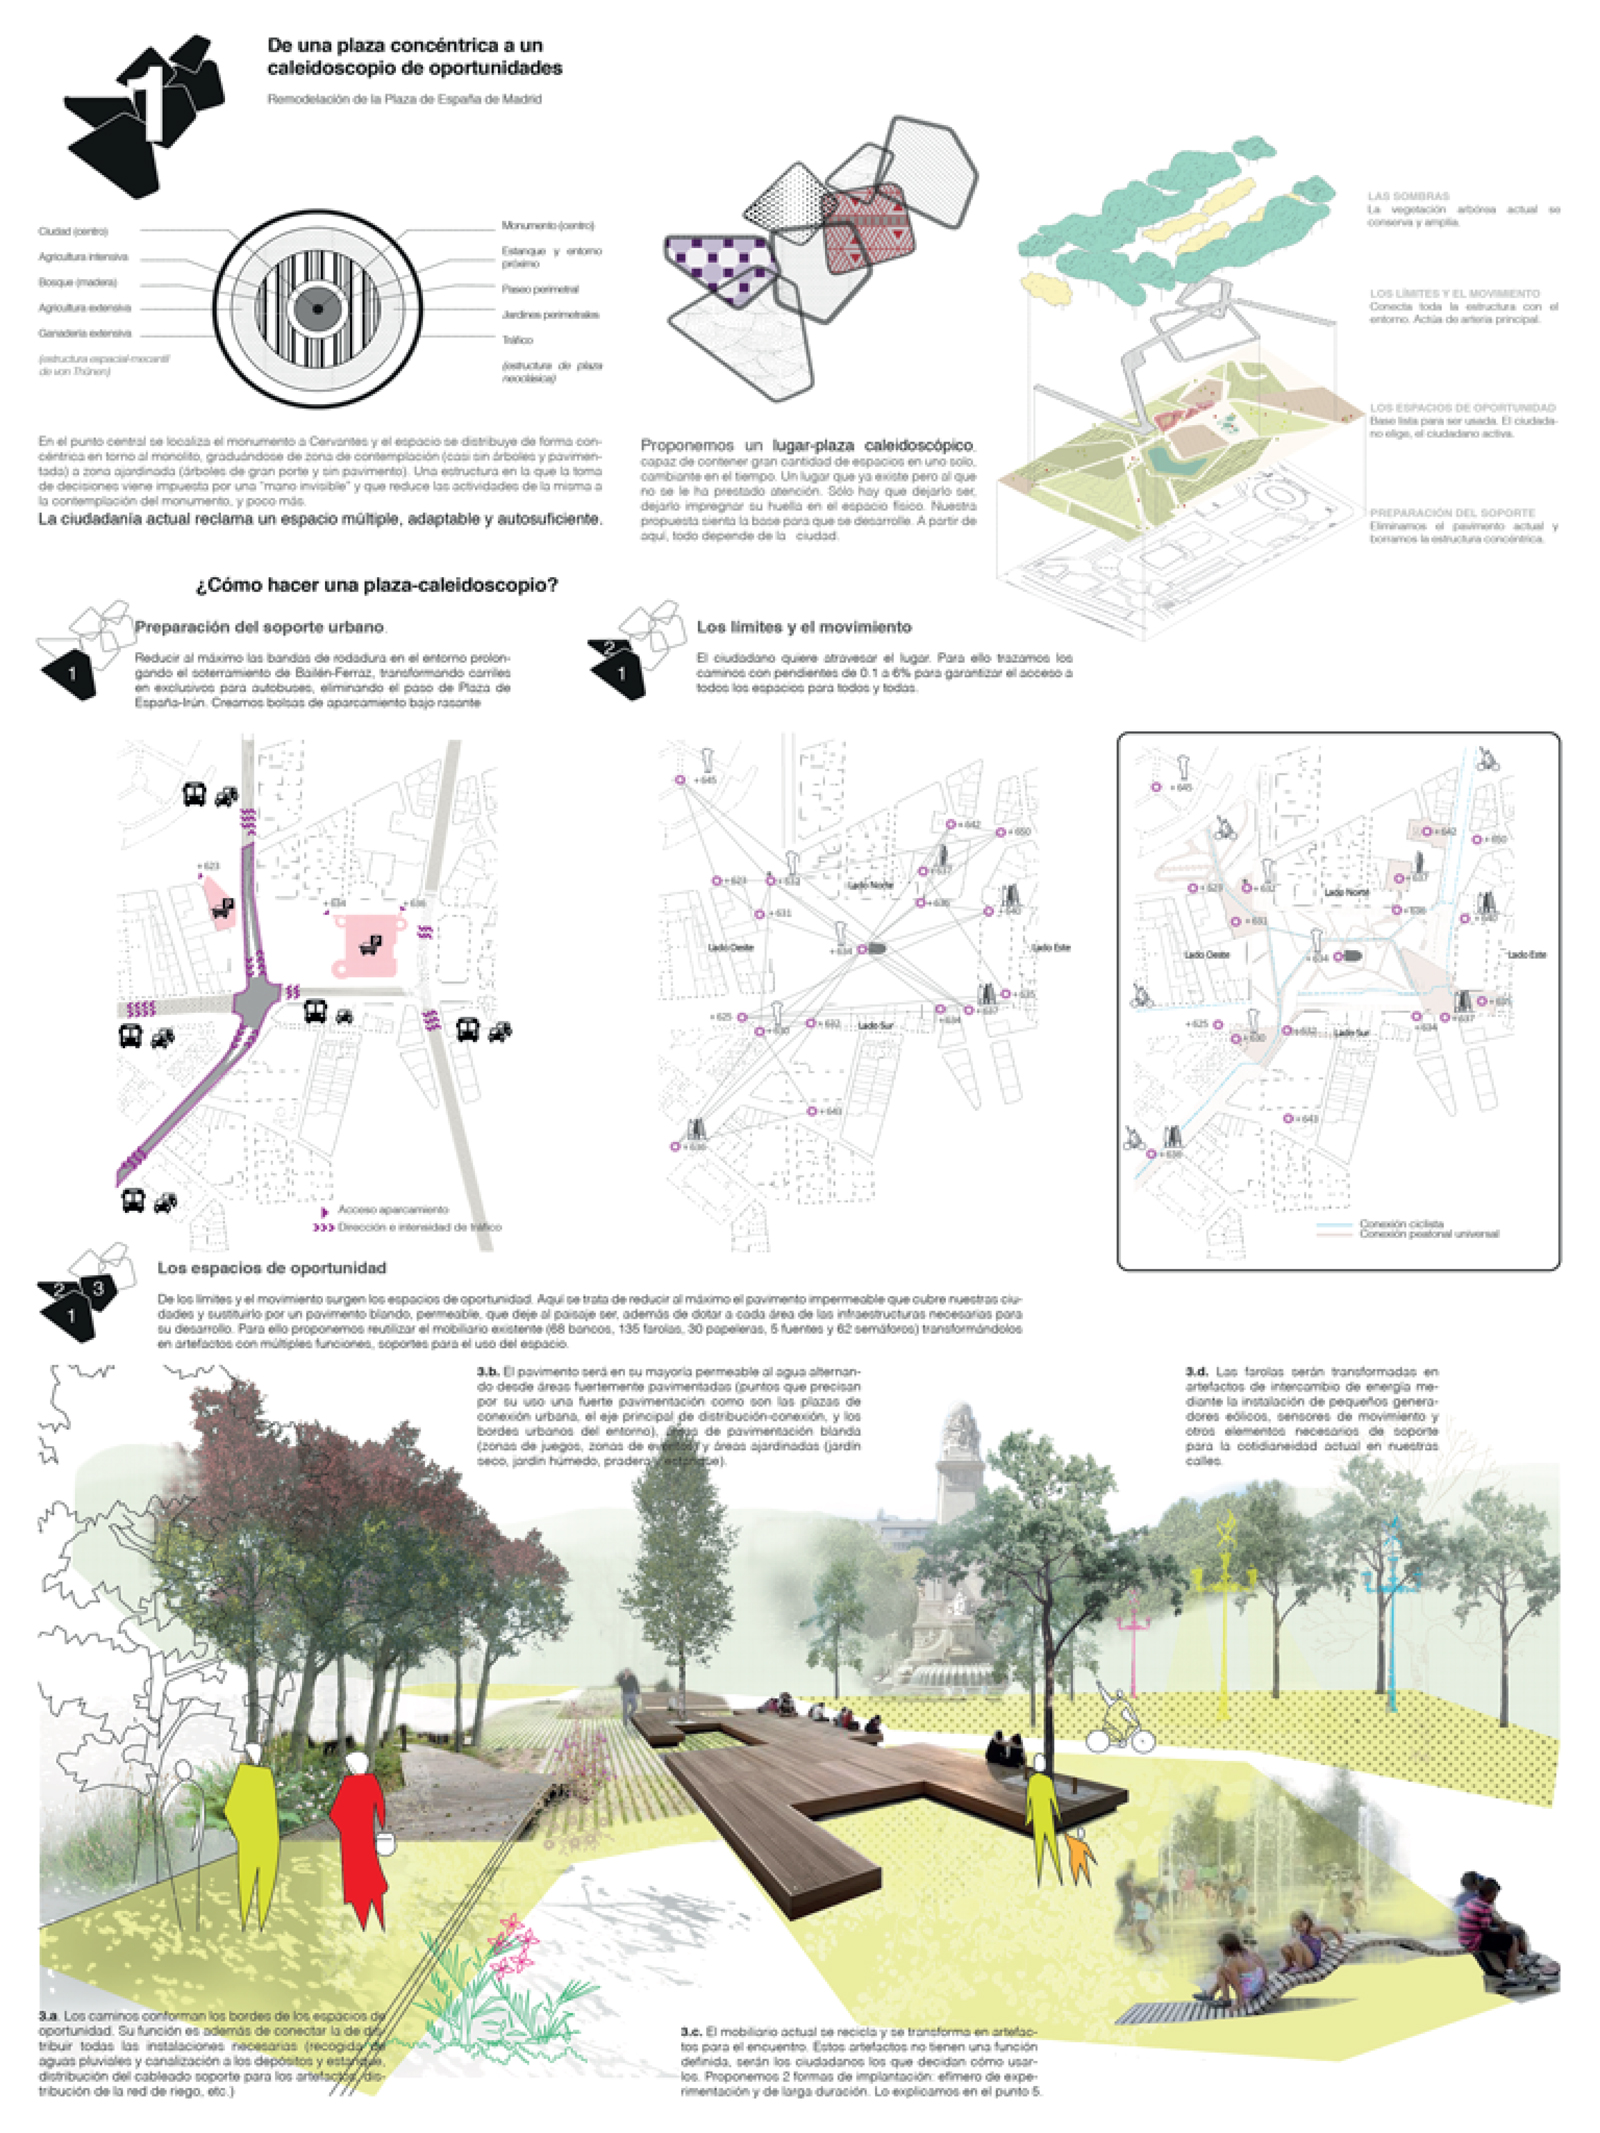 Proyecto 41 para la Remodelación de Plaza España: De una plaza concéntrica a un caleidoscopio de oportunidades